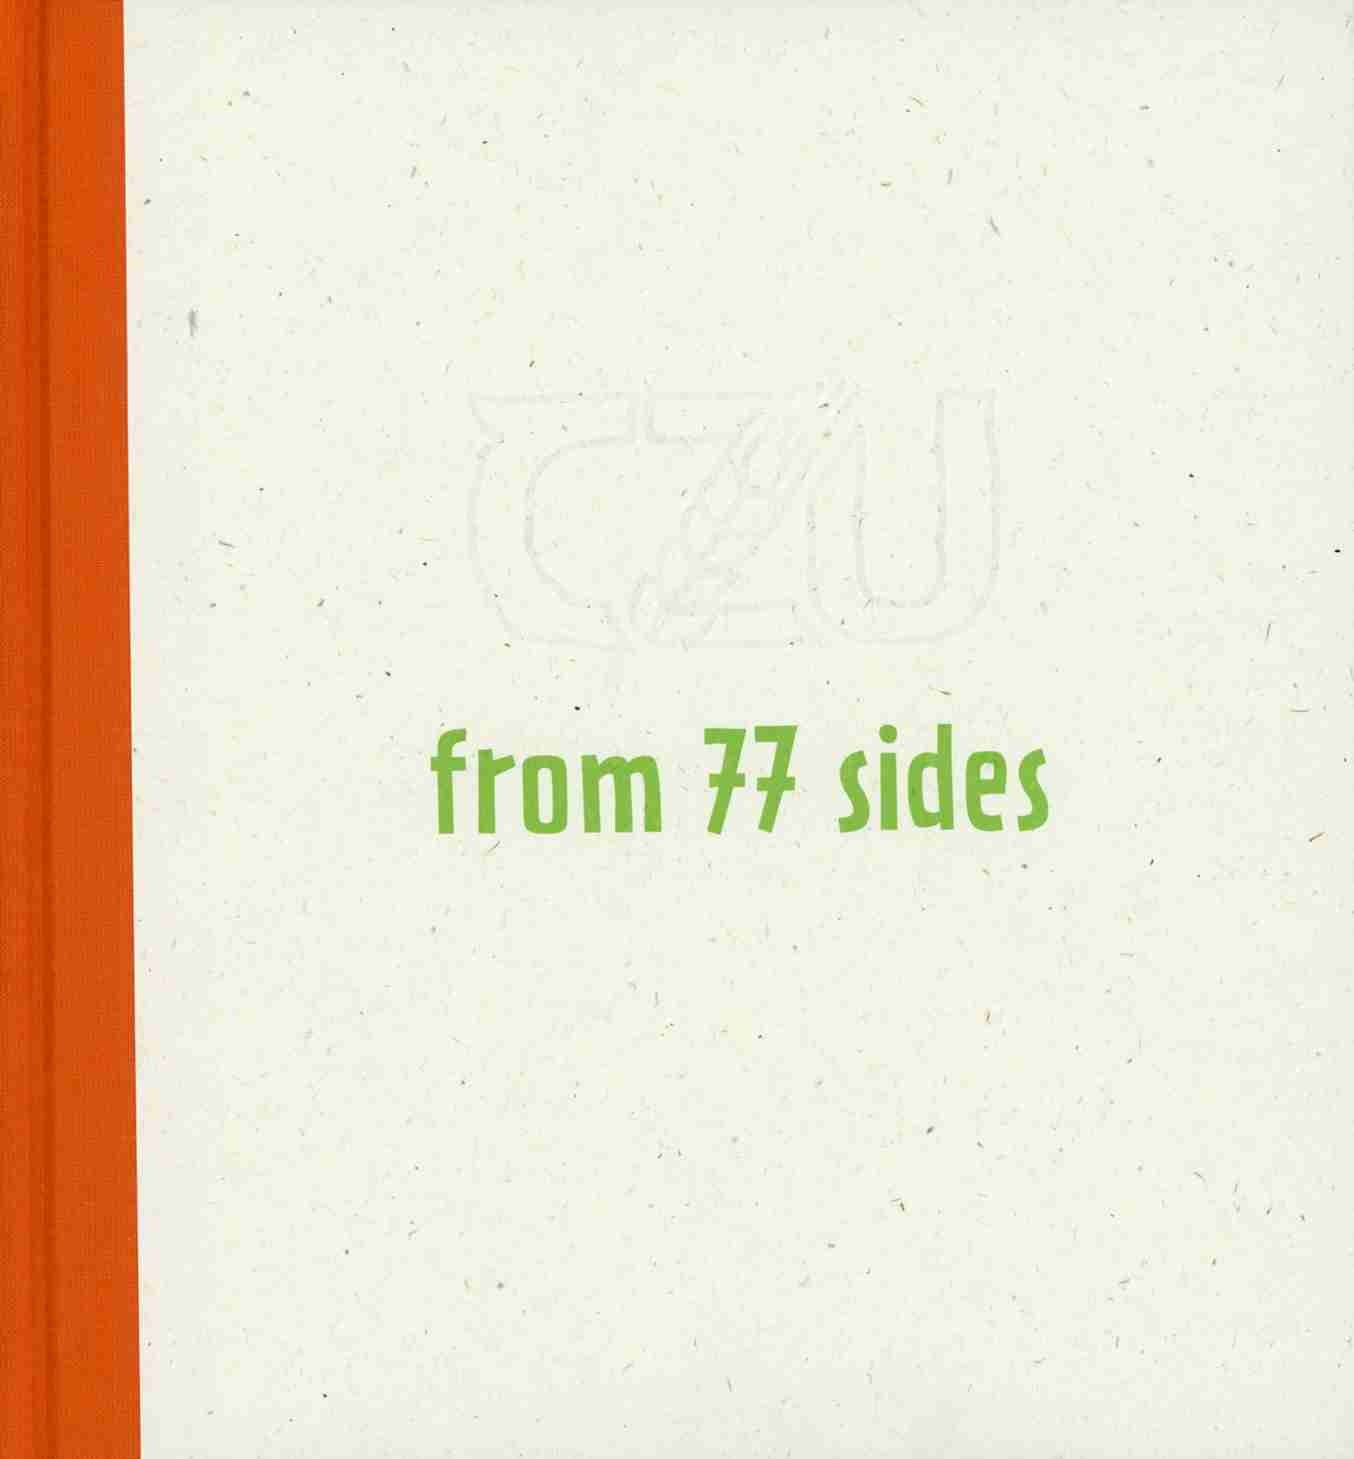 ČZU from 77 sides, 328